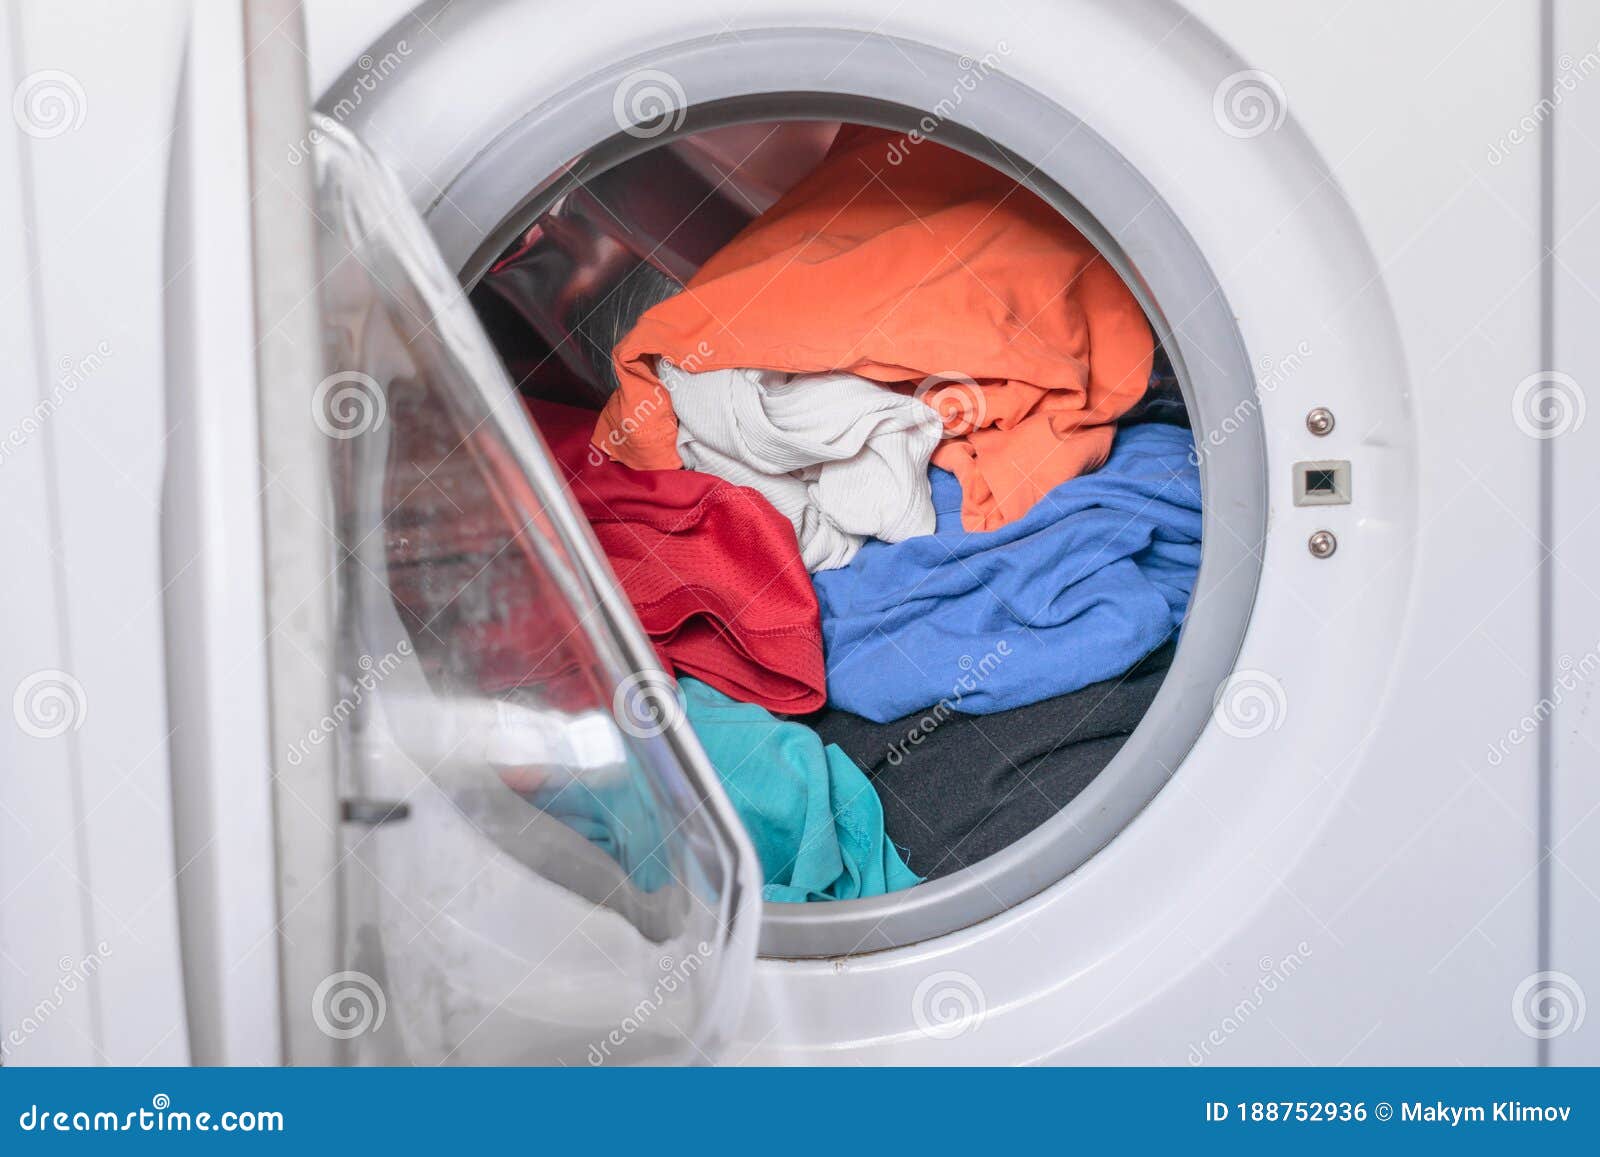 Cómo limpiar el filtro de la lavadora